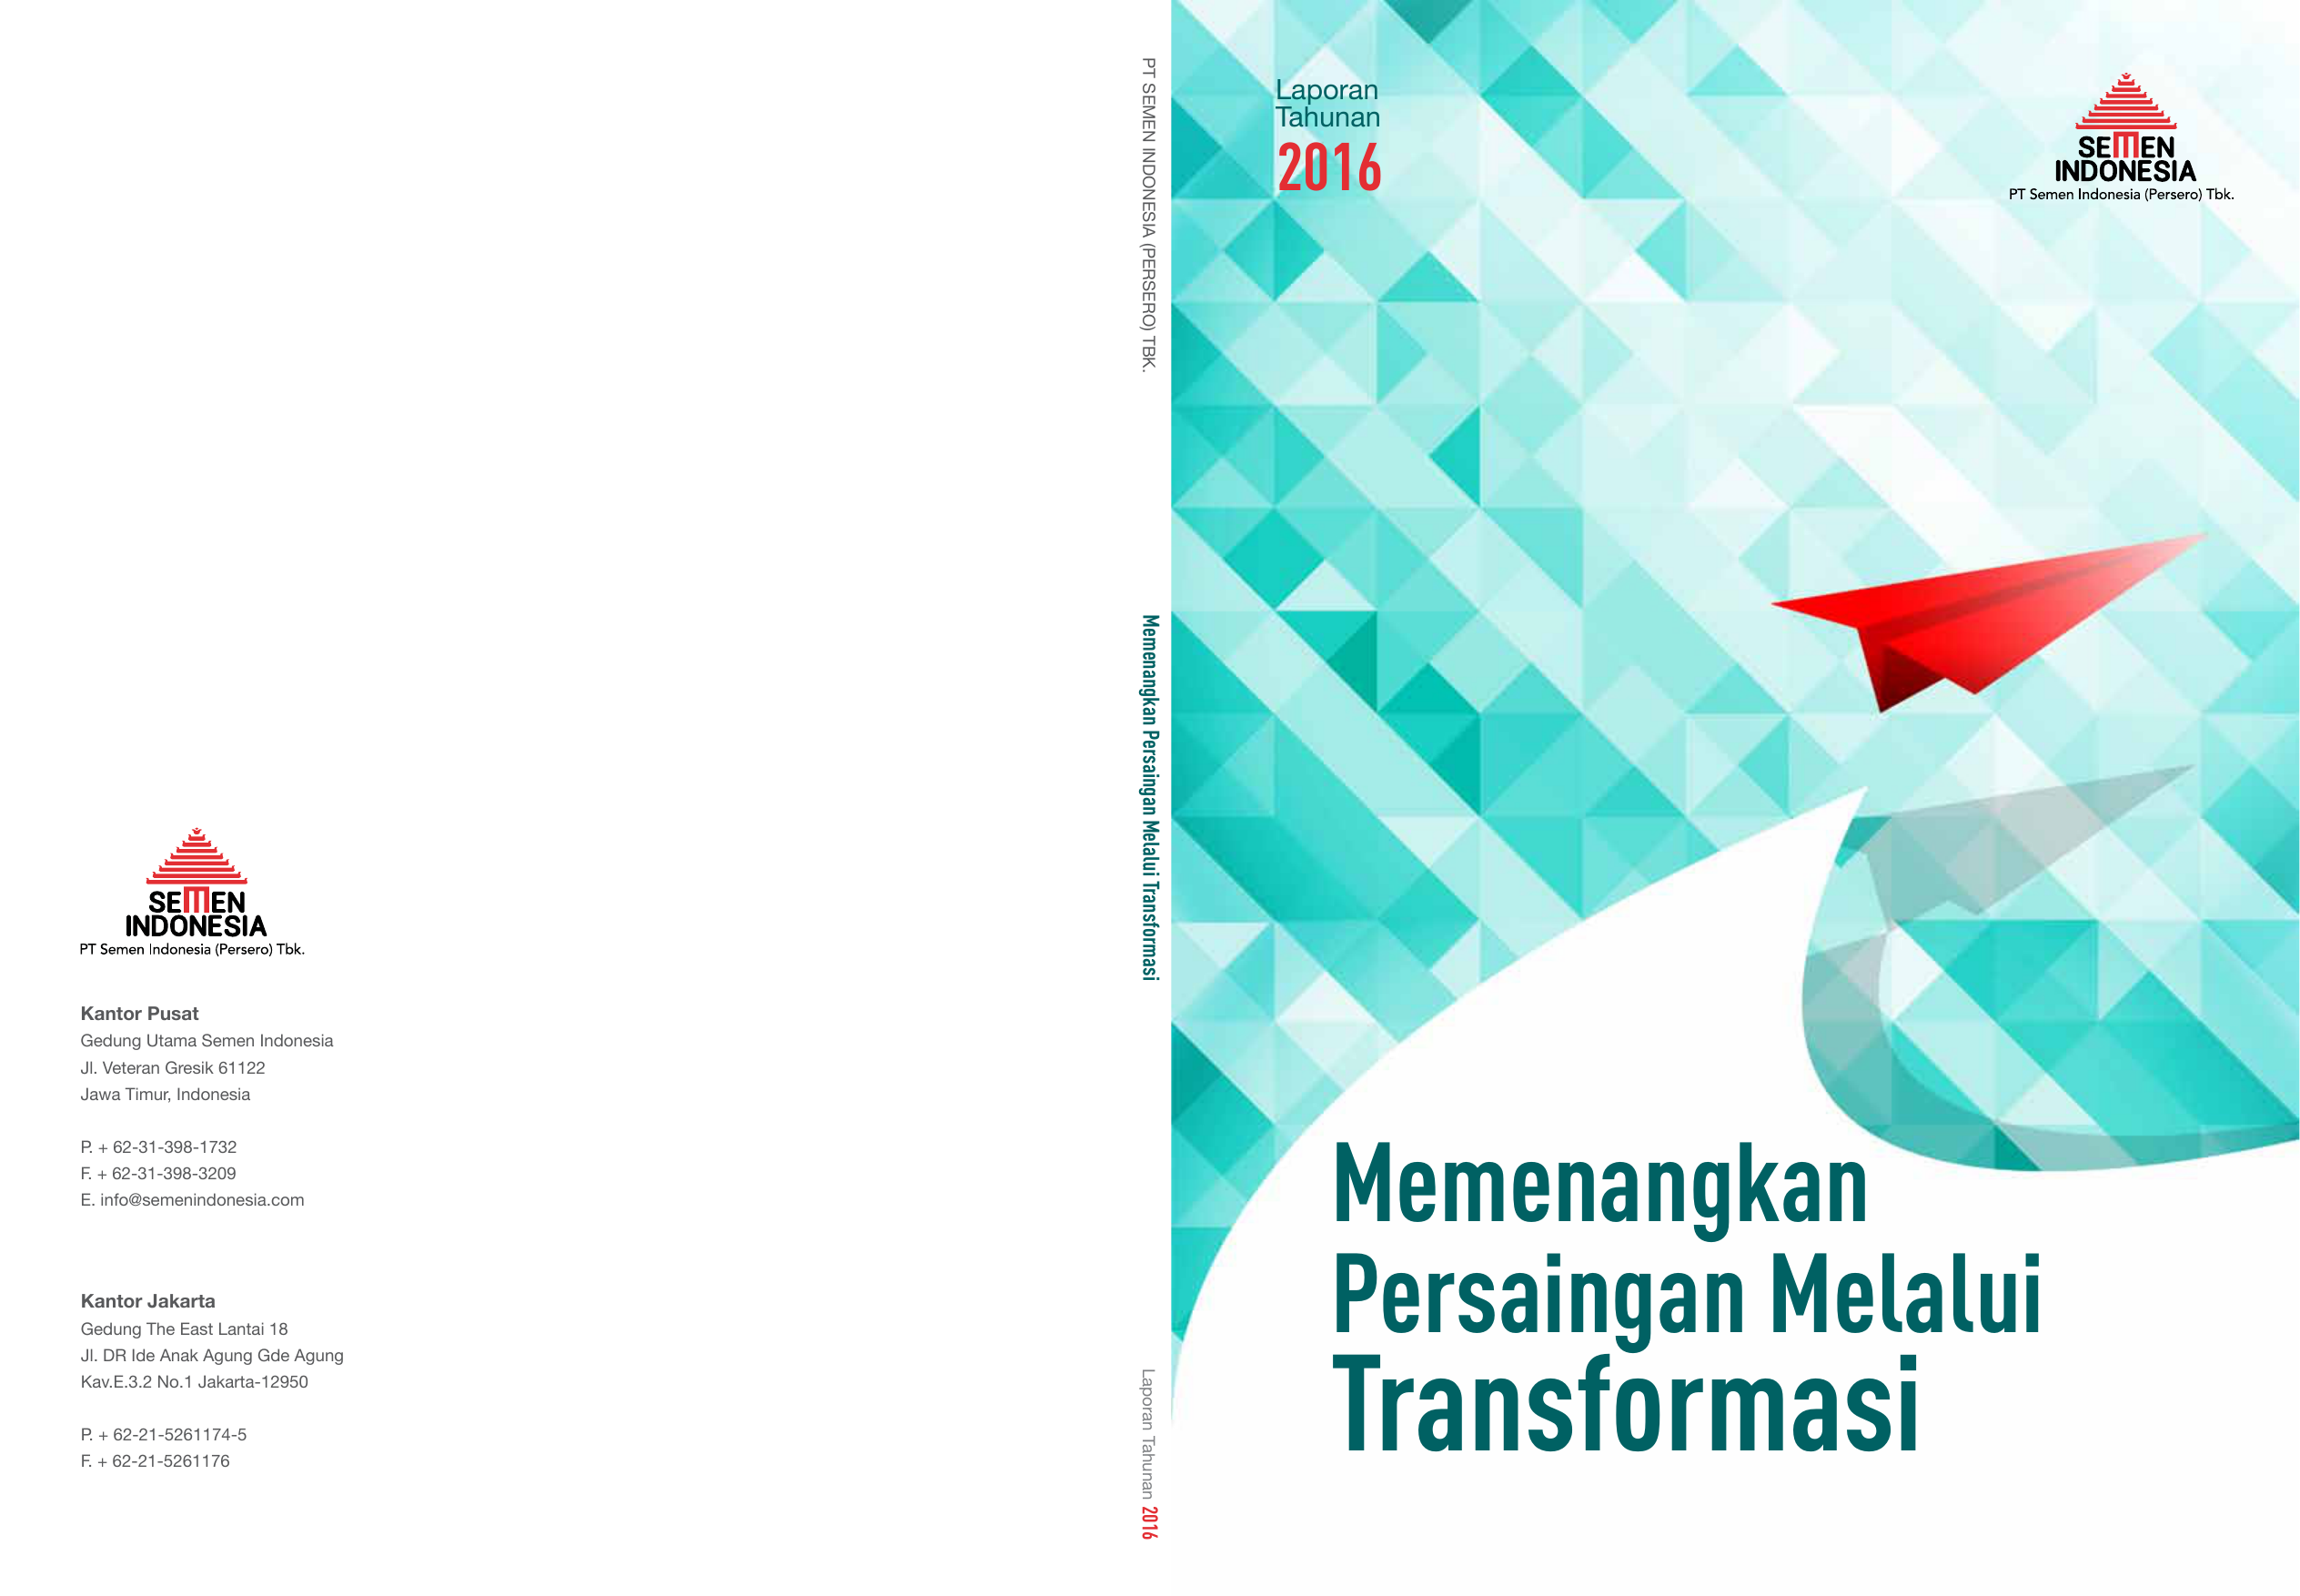 PT Semen Indonesia Persero Tbk Laporan Tahunan 2016 Memenangkan Persaingan Melalui Transformasi Kantor Pusat Gedung Utama Semen Indonesia Jl Veteran